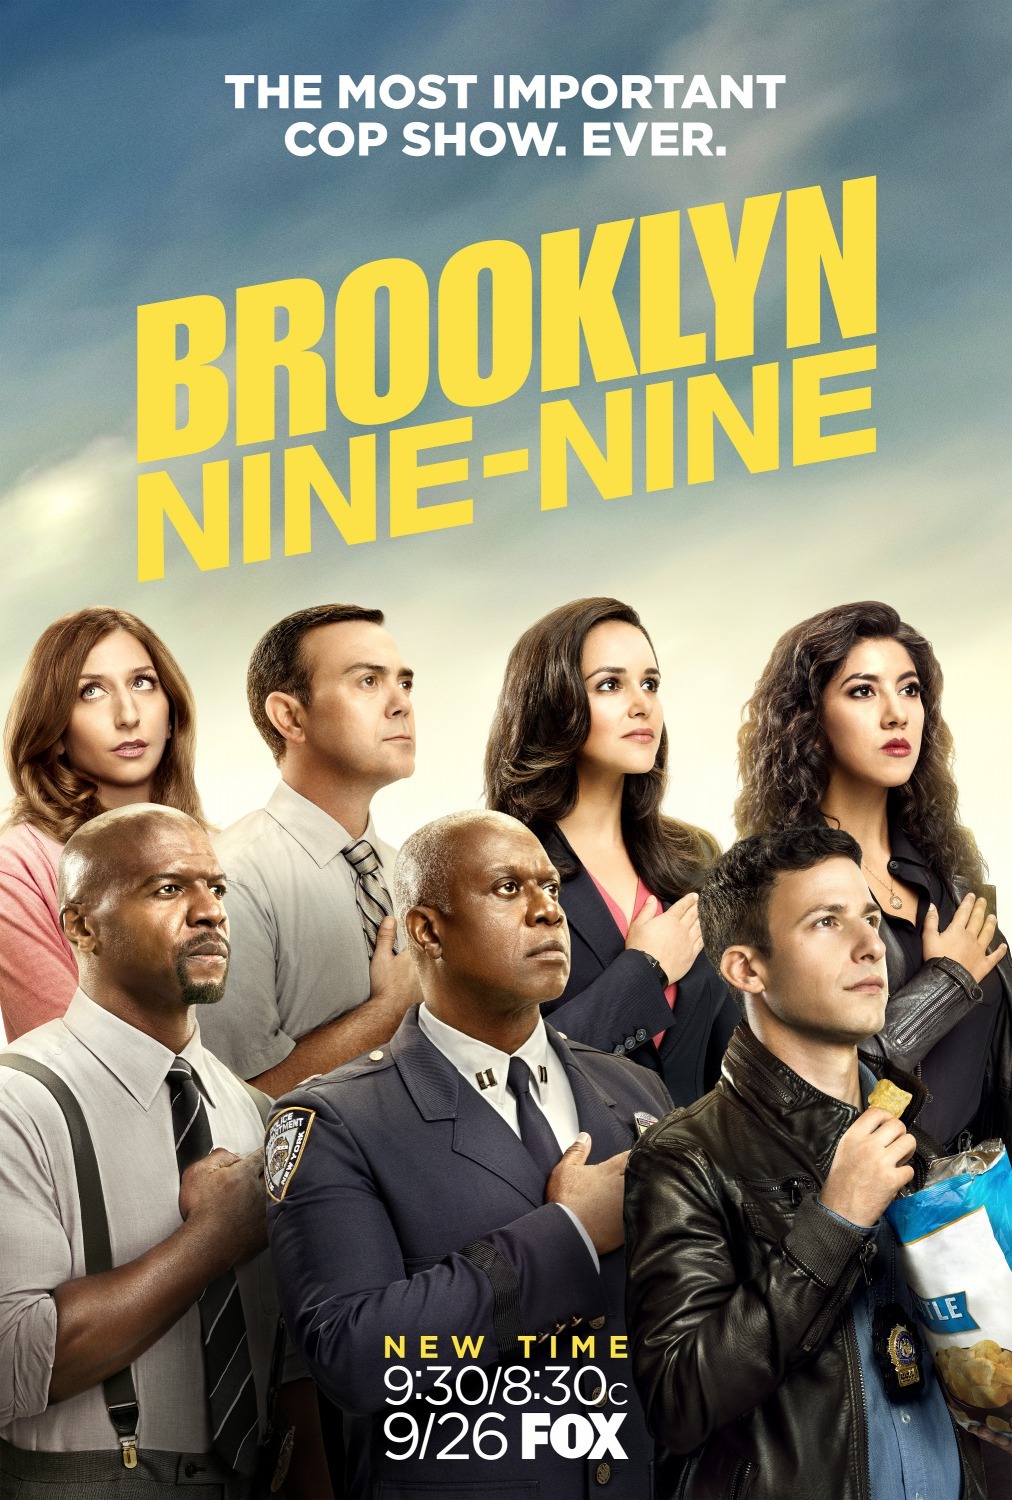 ดูหนังออนไลน์ฟรี Brooklyn Nine-Nine Season 4 EP.2 บรู๊คลินเก้า ปี 4 ตอนที่ 2